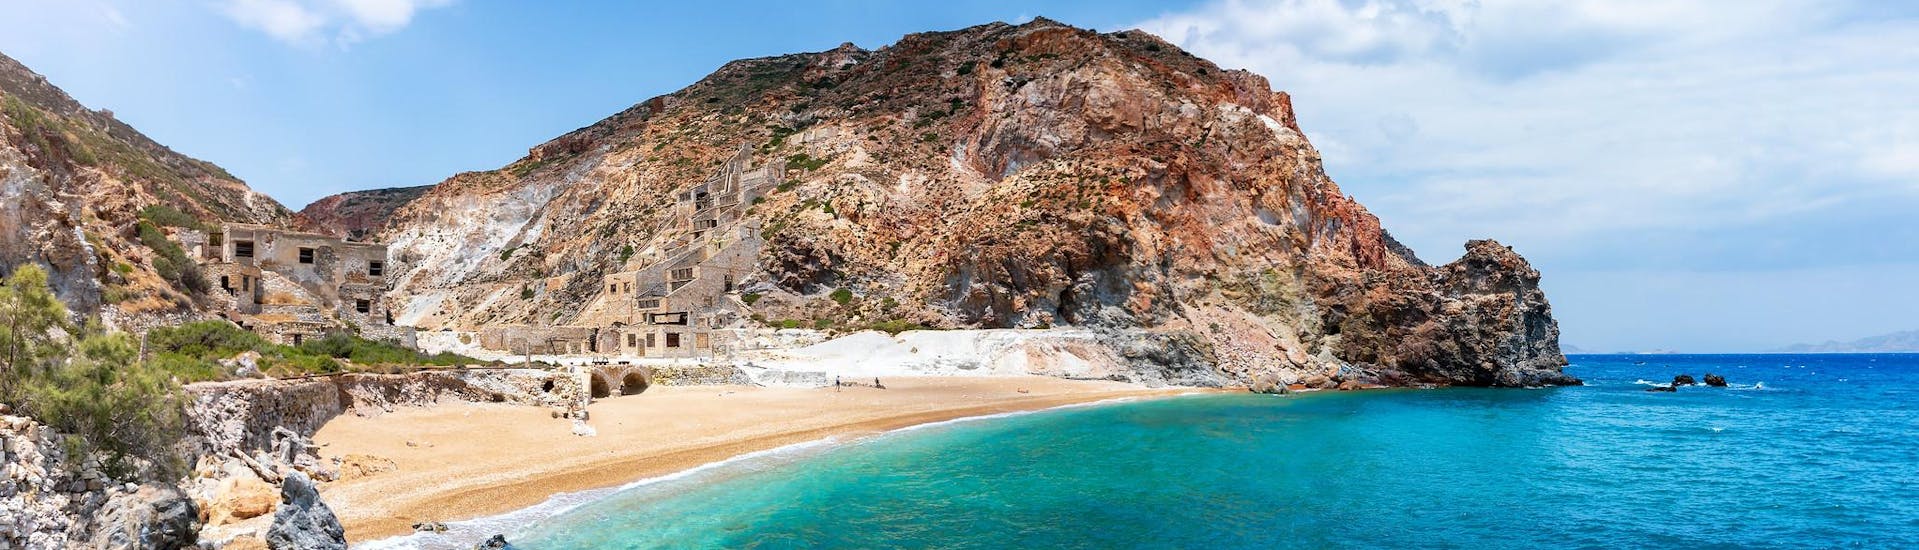 Der abgelegene Strand von Thiorichia auf der Insel Milos, den Sie mit einer Bootstour besuchen können.